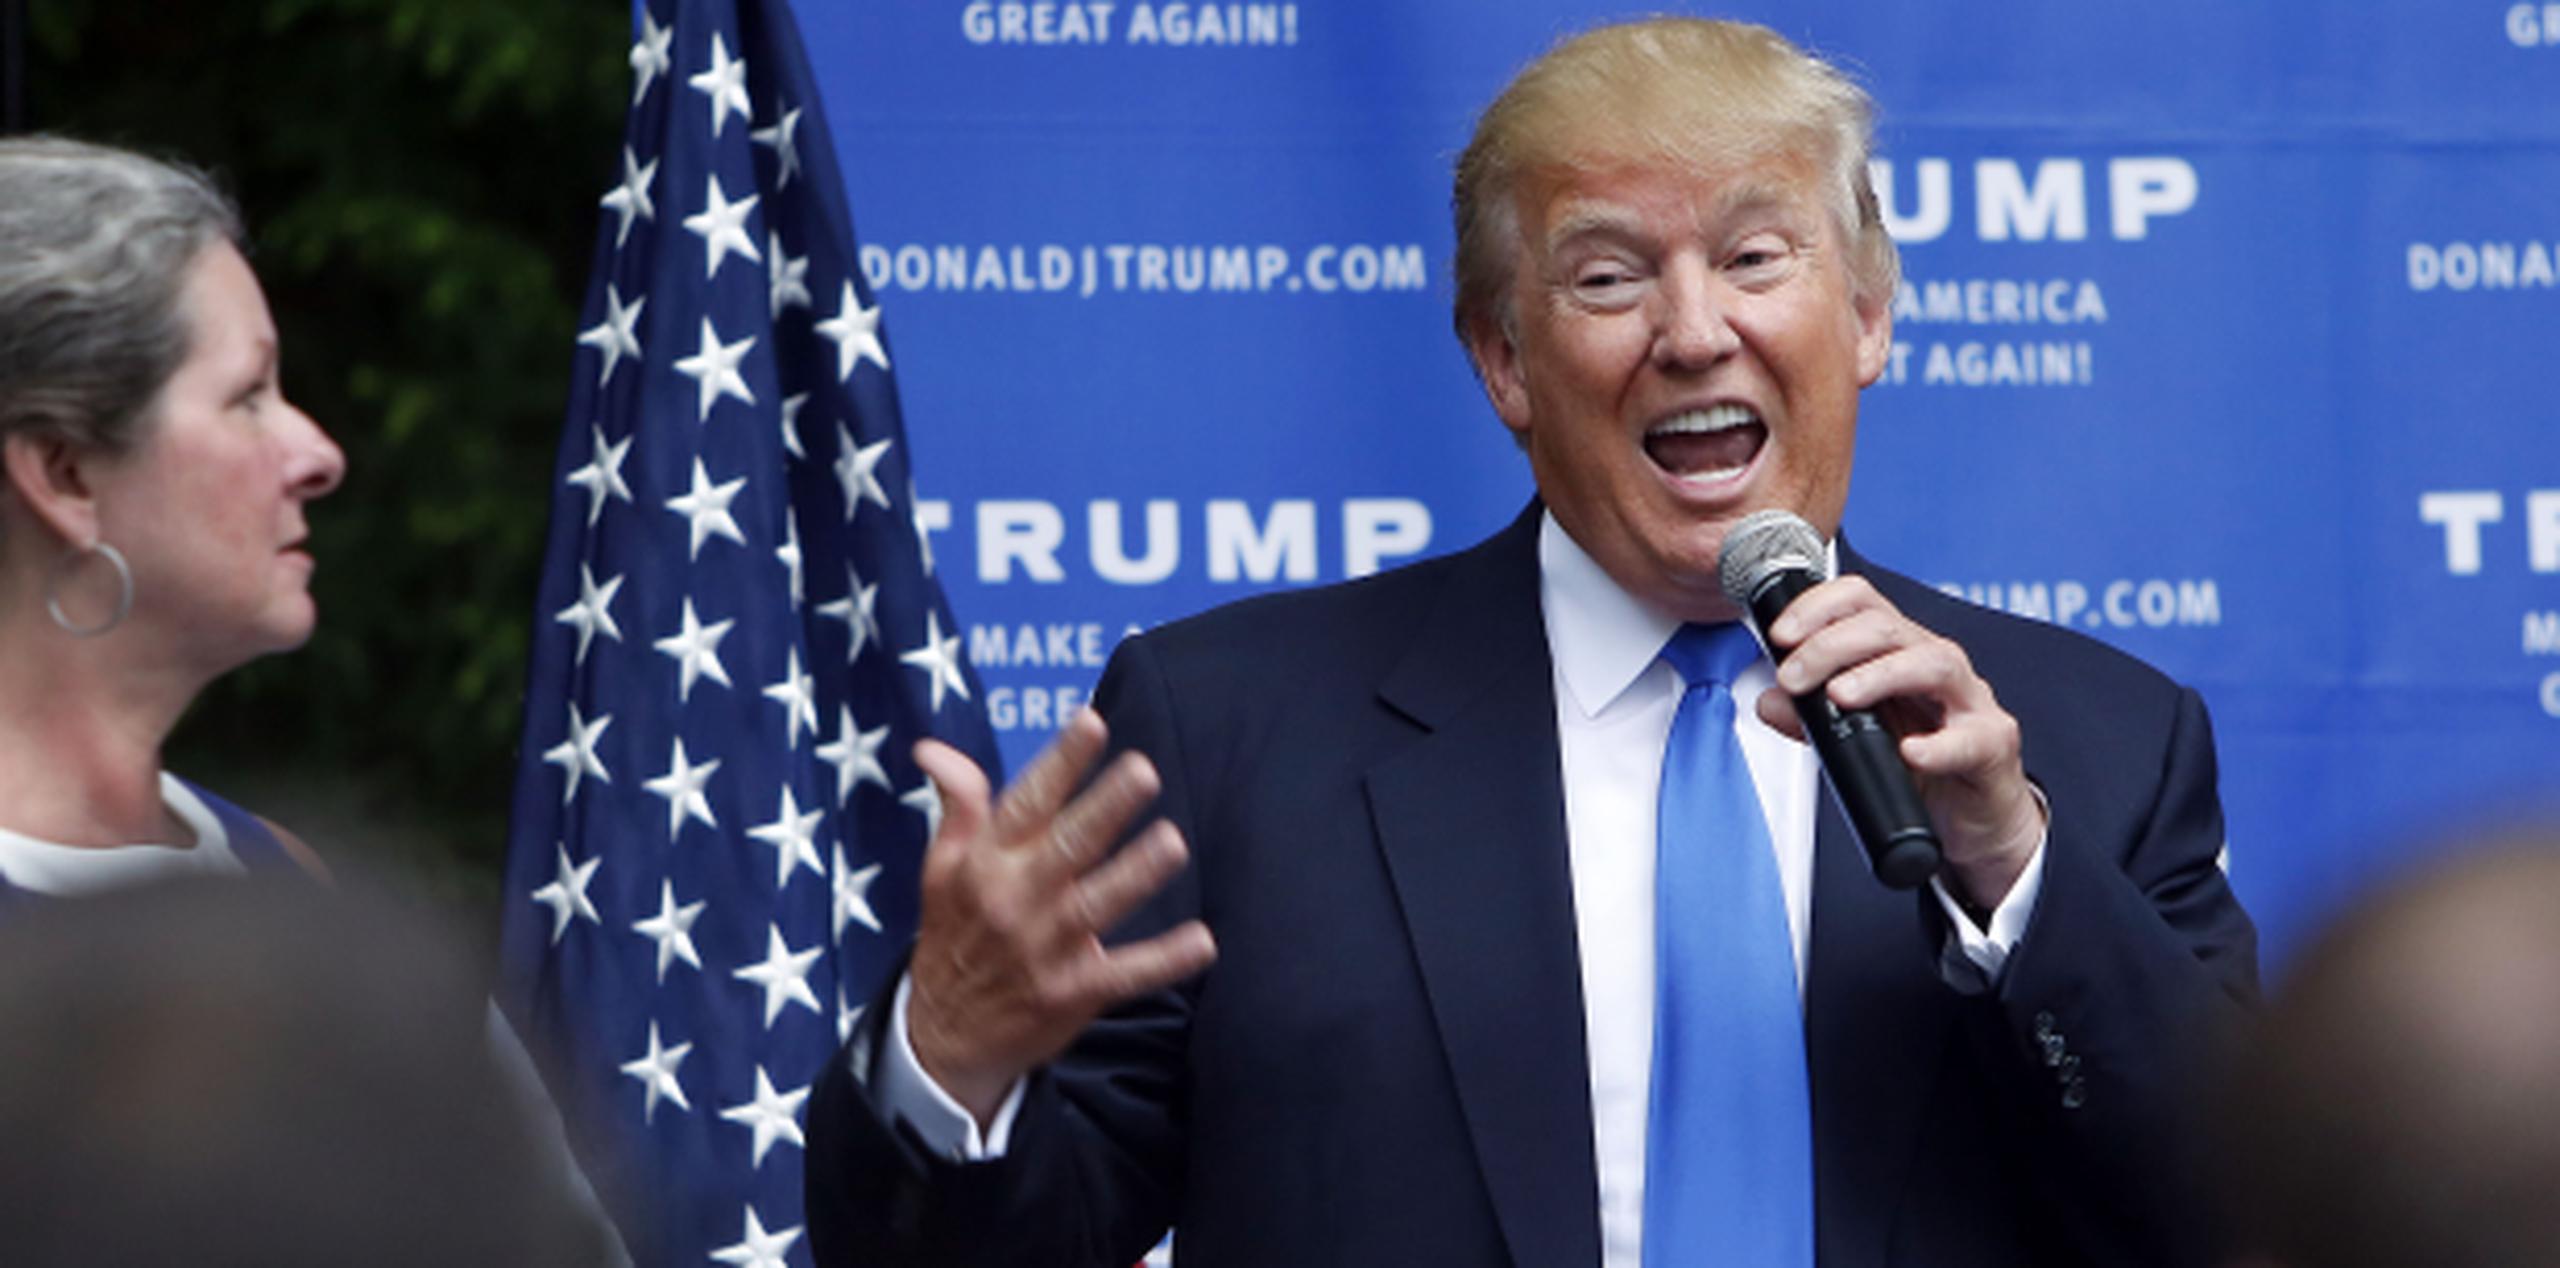 Donald Trump, de campaña ayer en New Hampshire, ha perdido diferentes socios comerciales tras sus expresiones rcasistas. (AP)